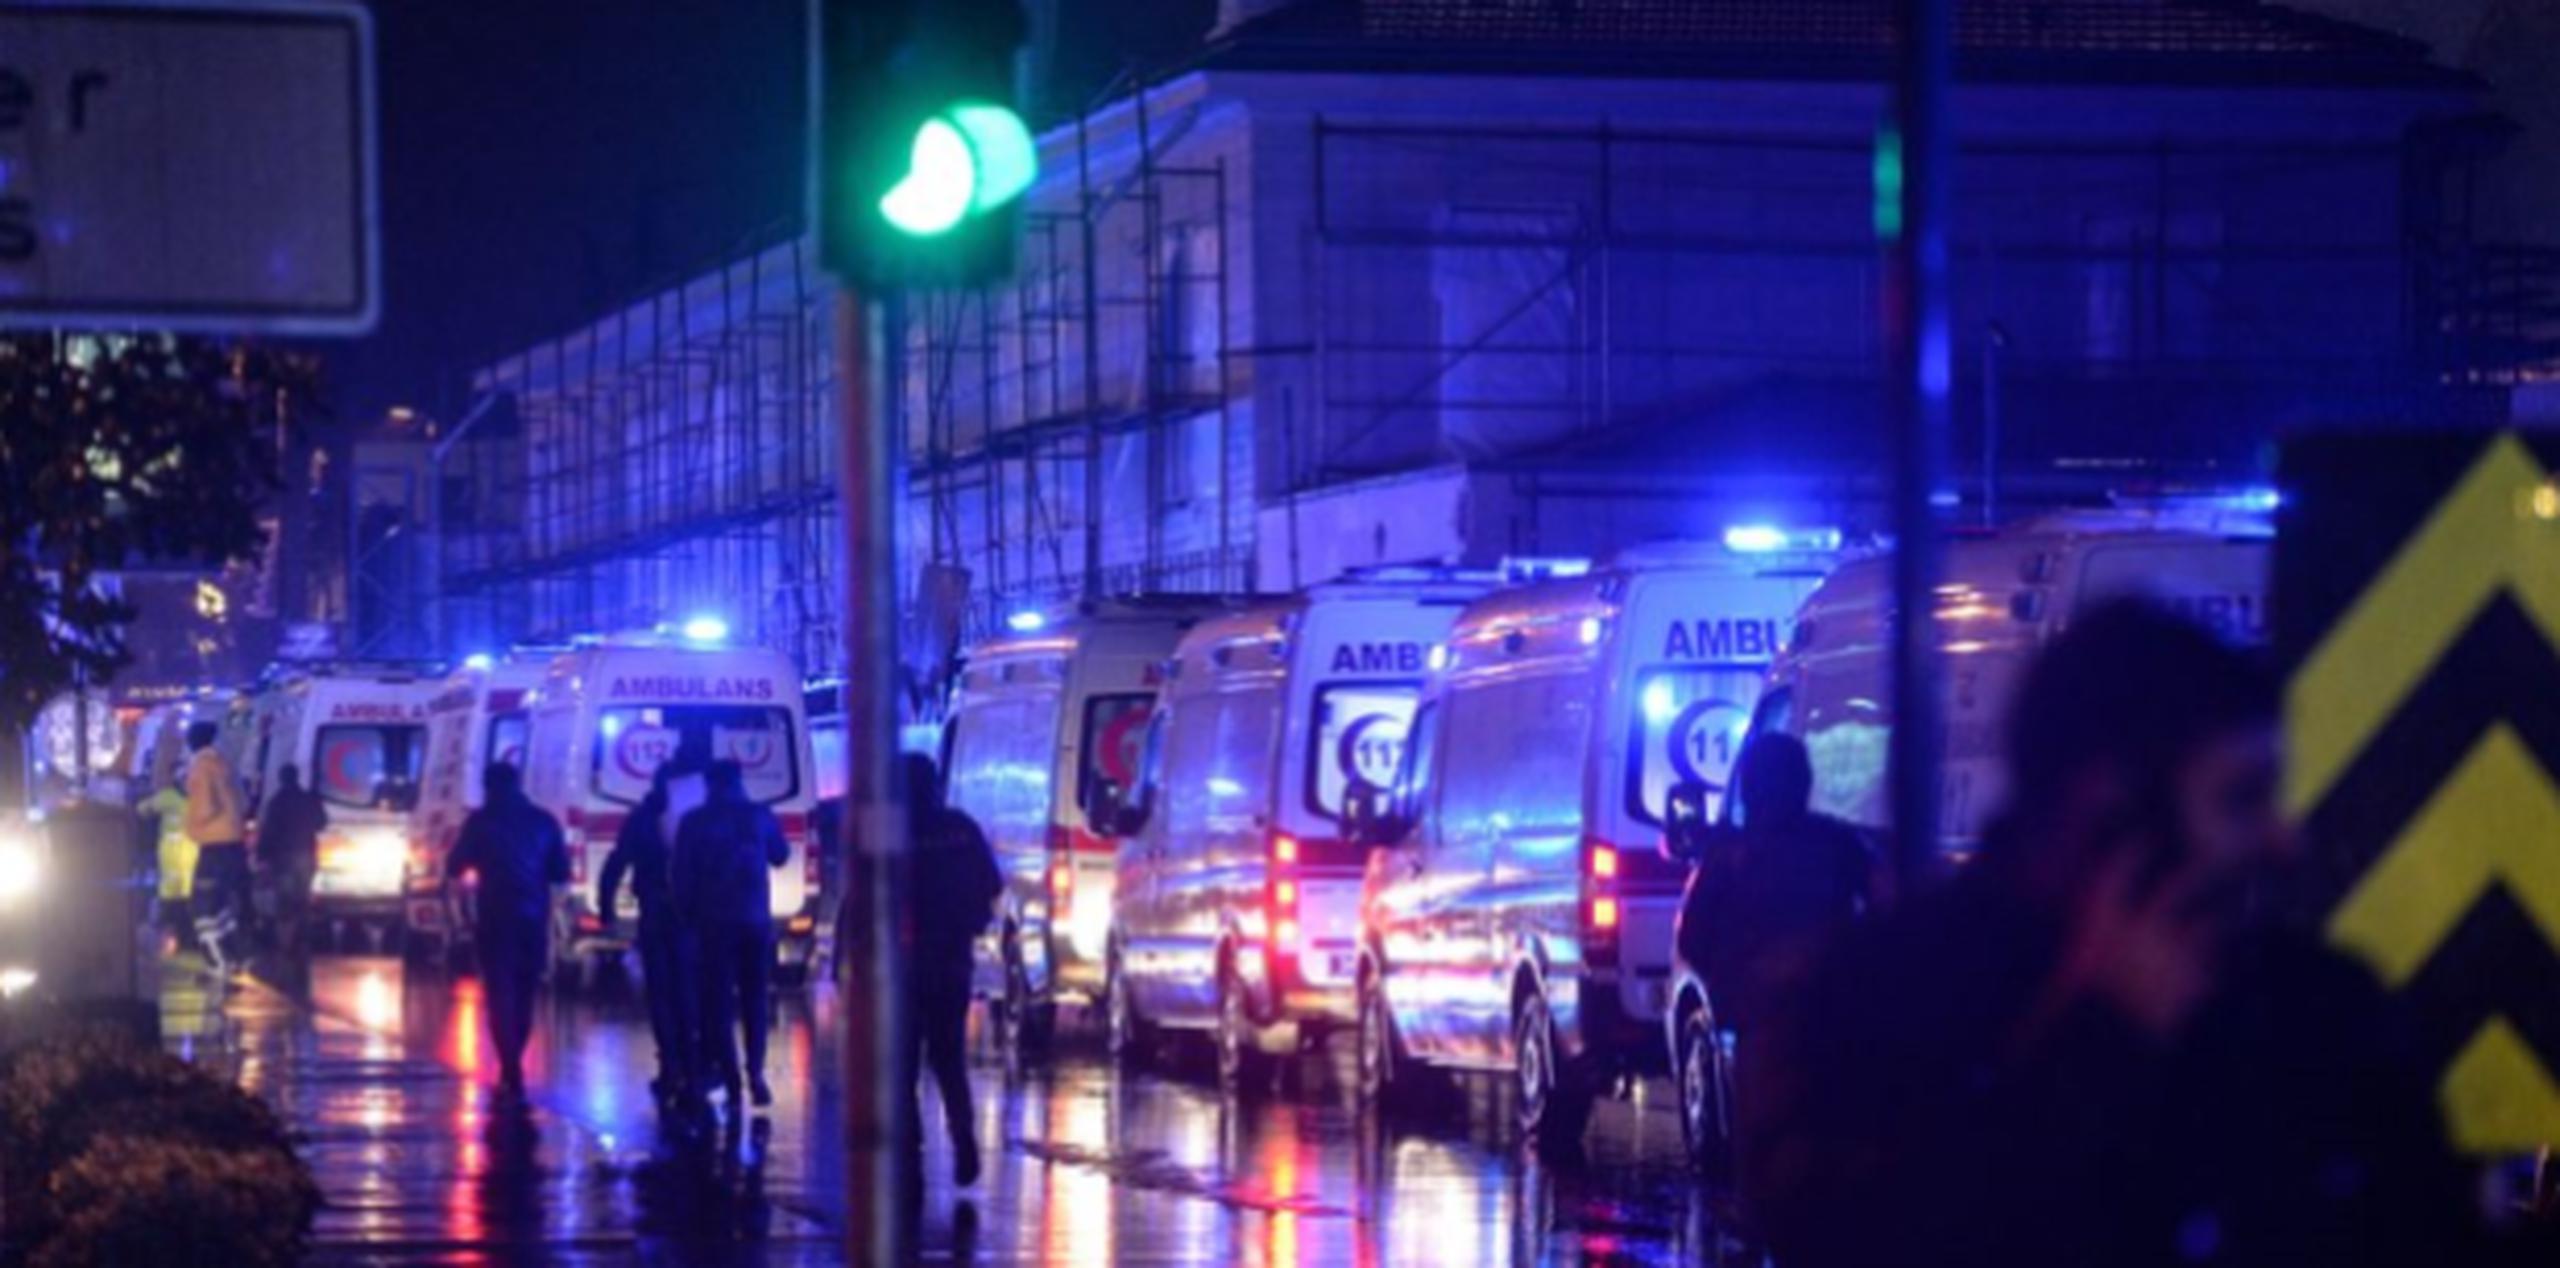 Entre los 69 heridos que están recibiendo tratamiento, hay al menos cinco heridos graves, entre ellos un ciudadano tunecino, informaron las autoridades turcas. (AP)